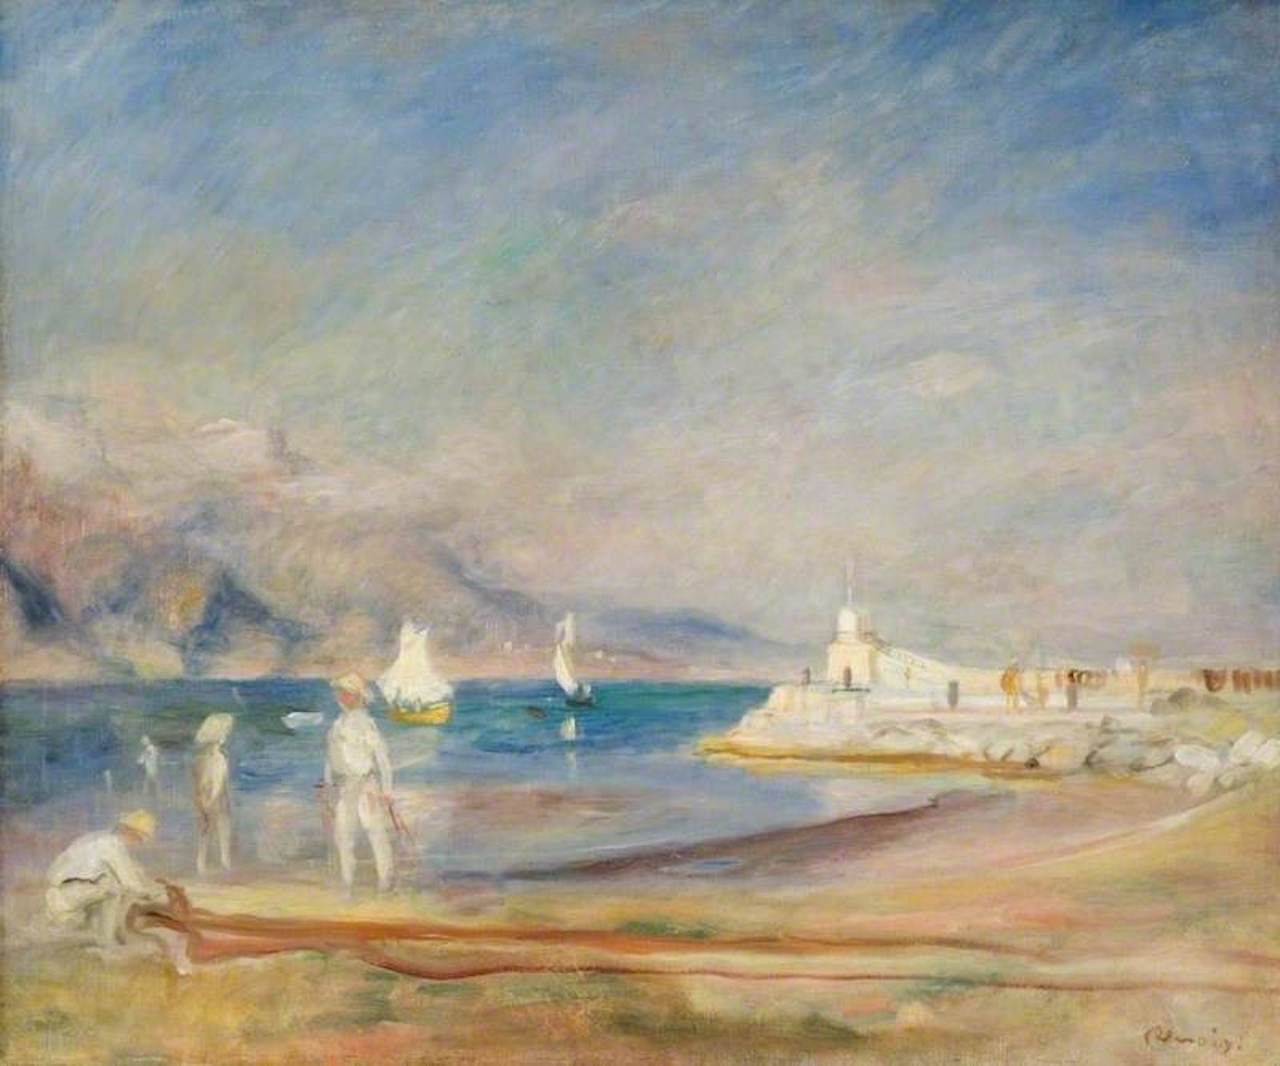 St. Tropez by Pierre-Auguste Renoir - 1902 